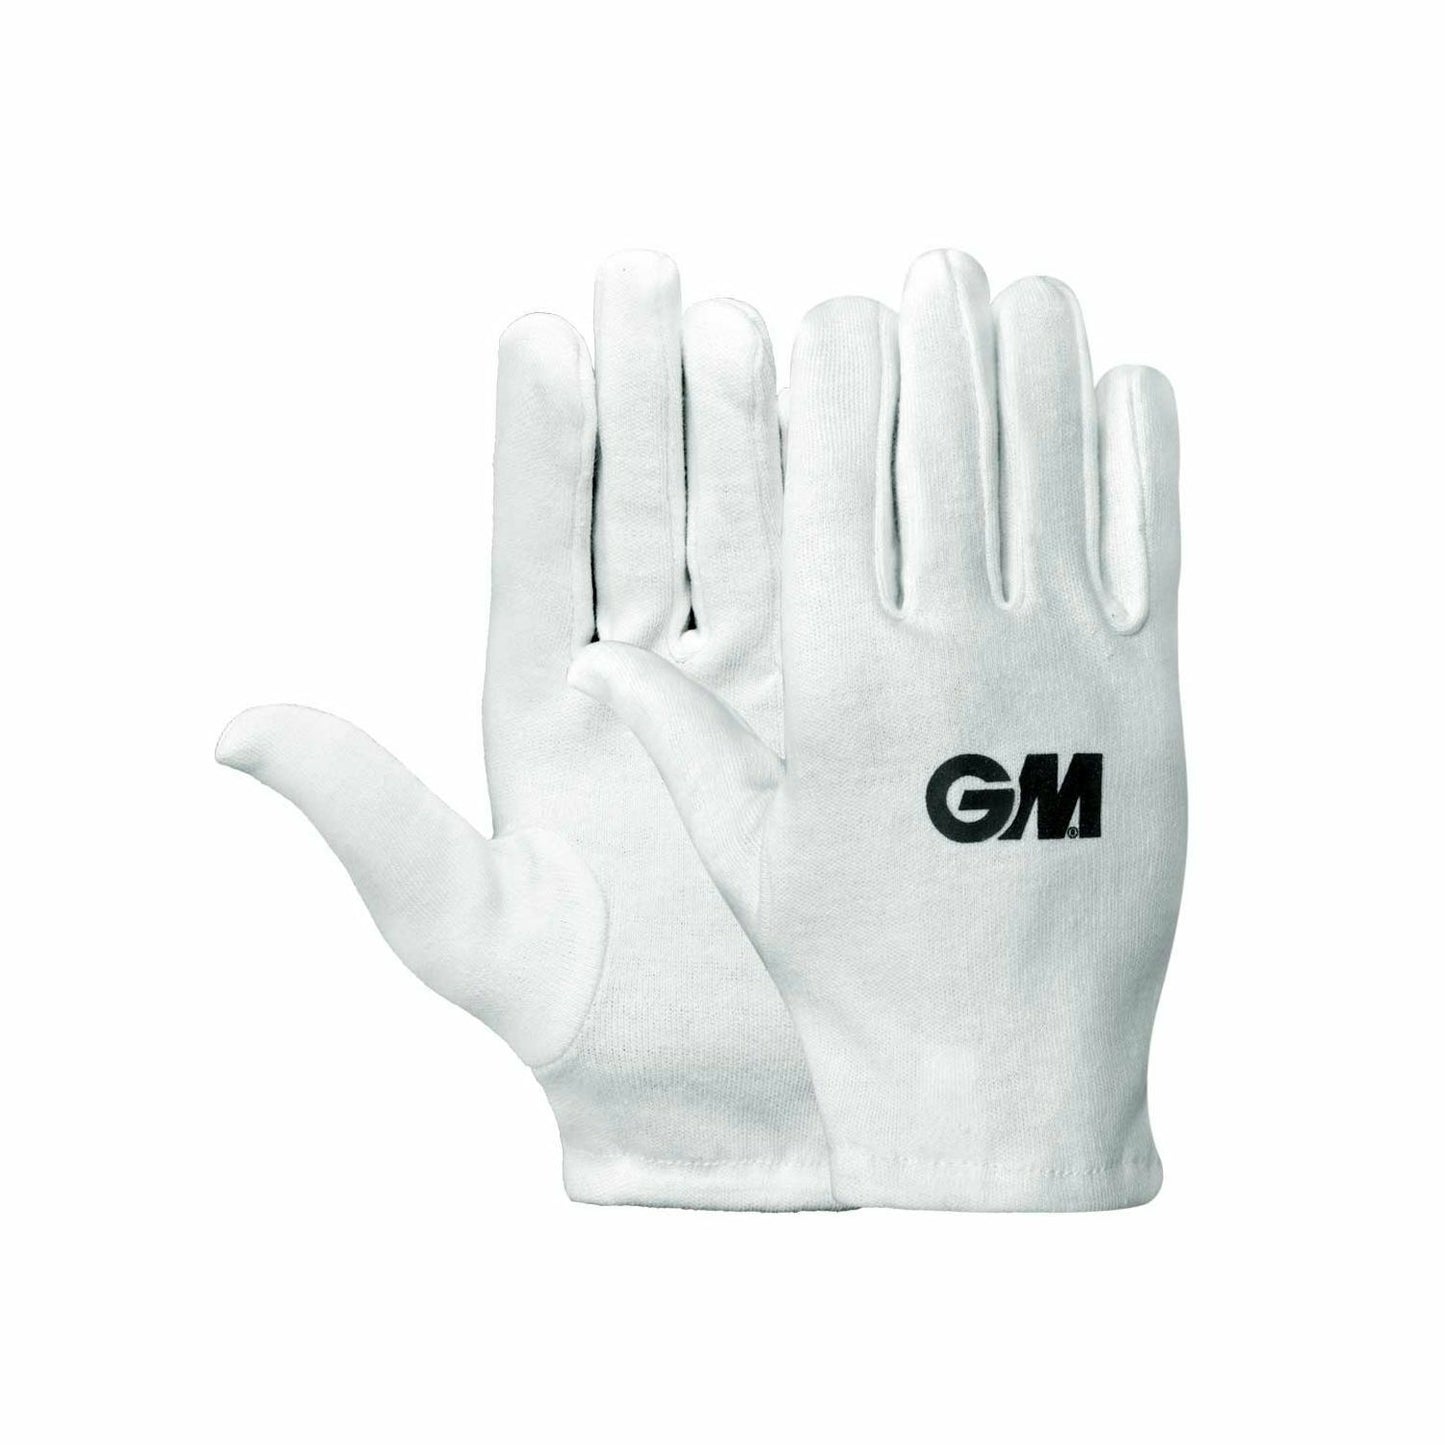 GM Batting Gloves INNER FULL Cotton